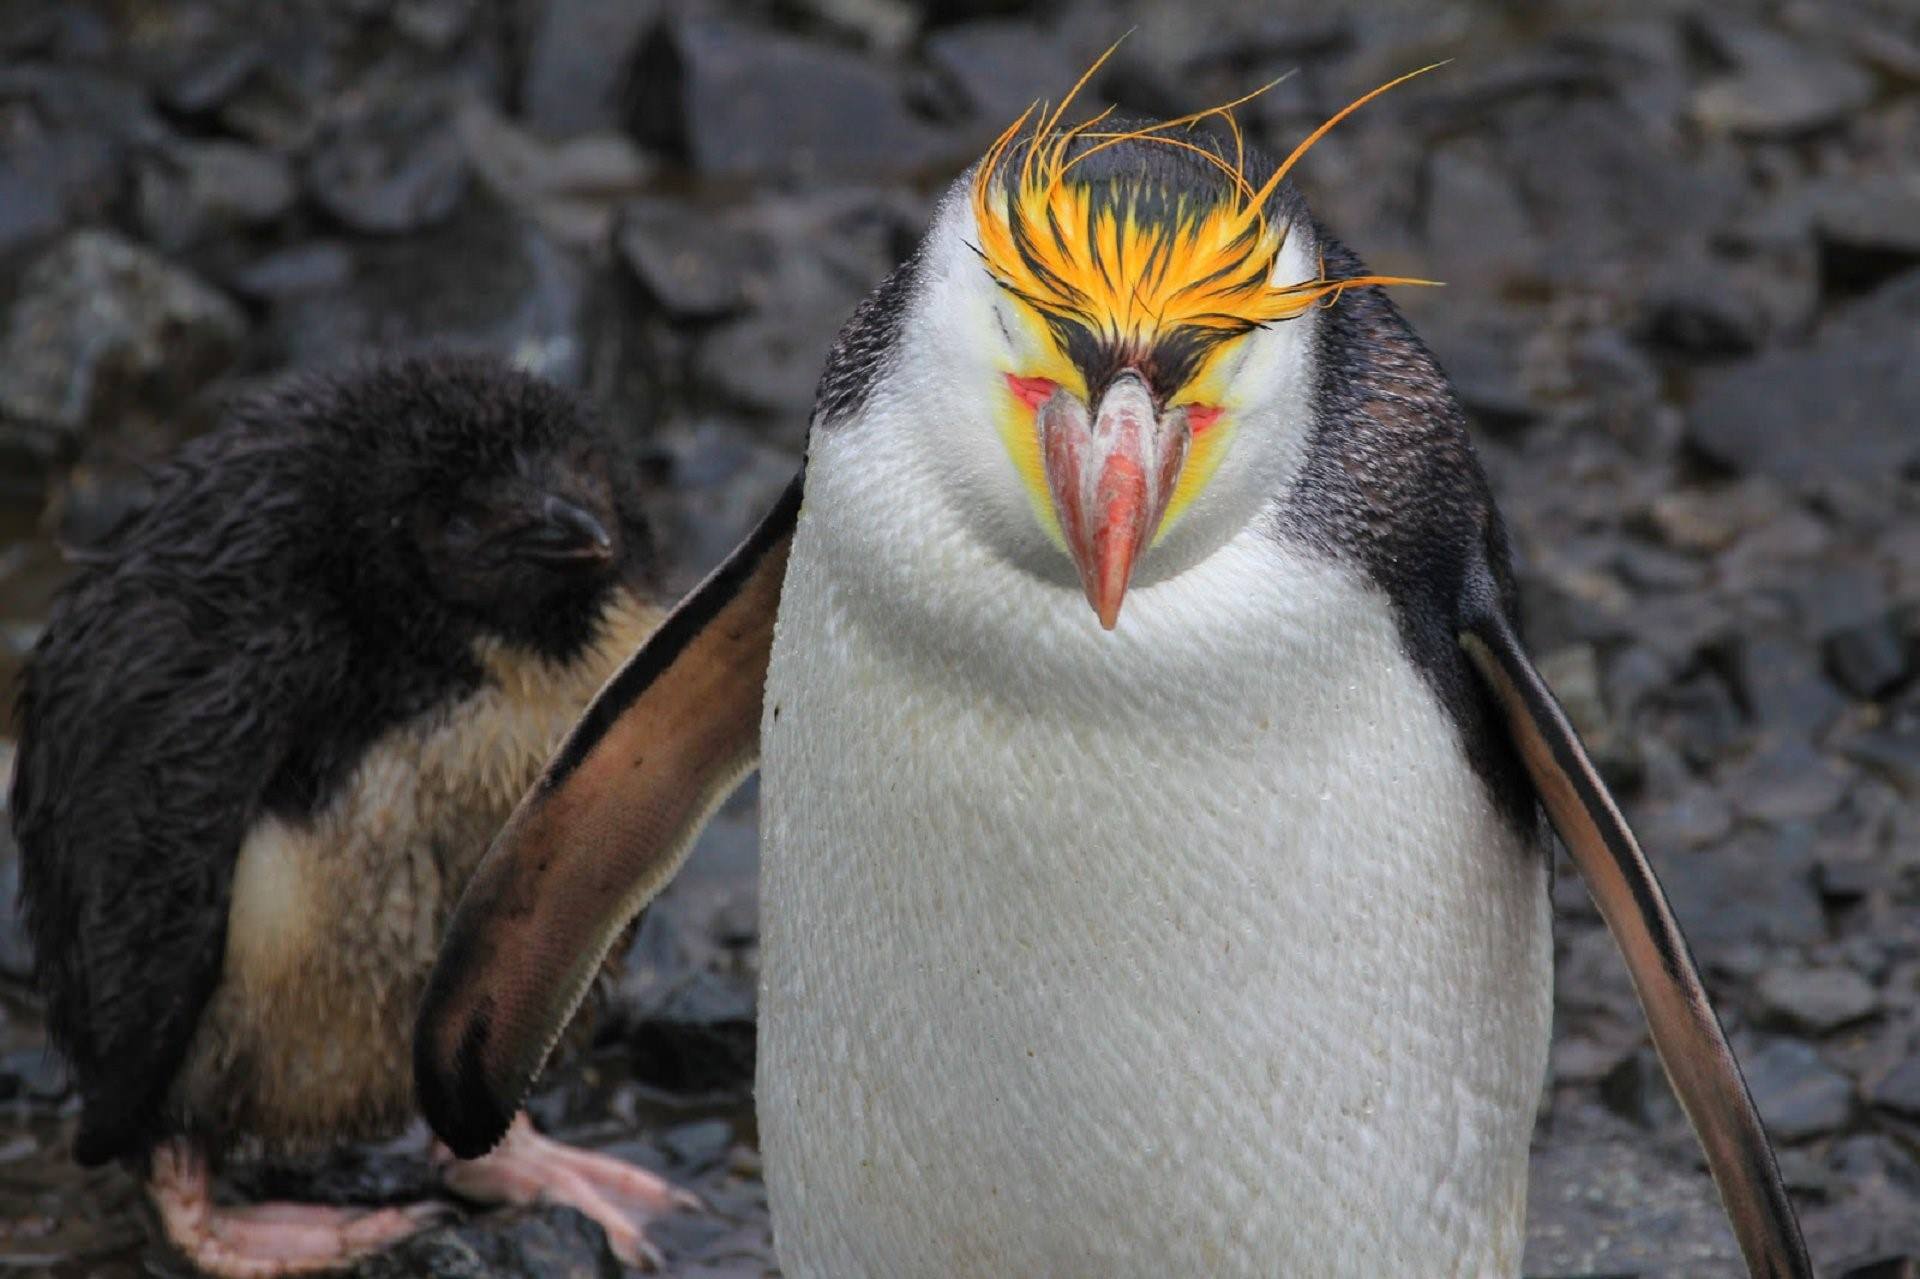 Фото пингвина в хорошем качестве